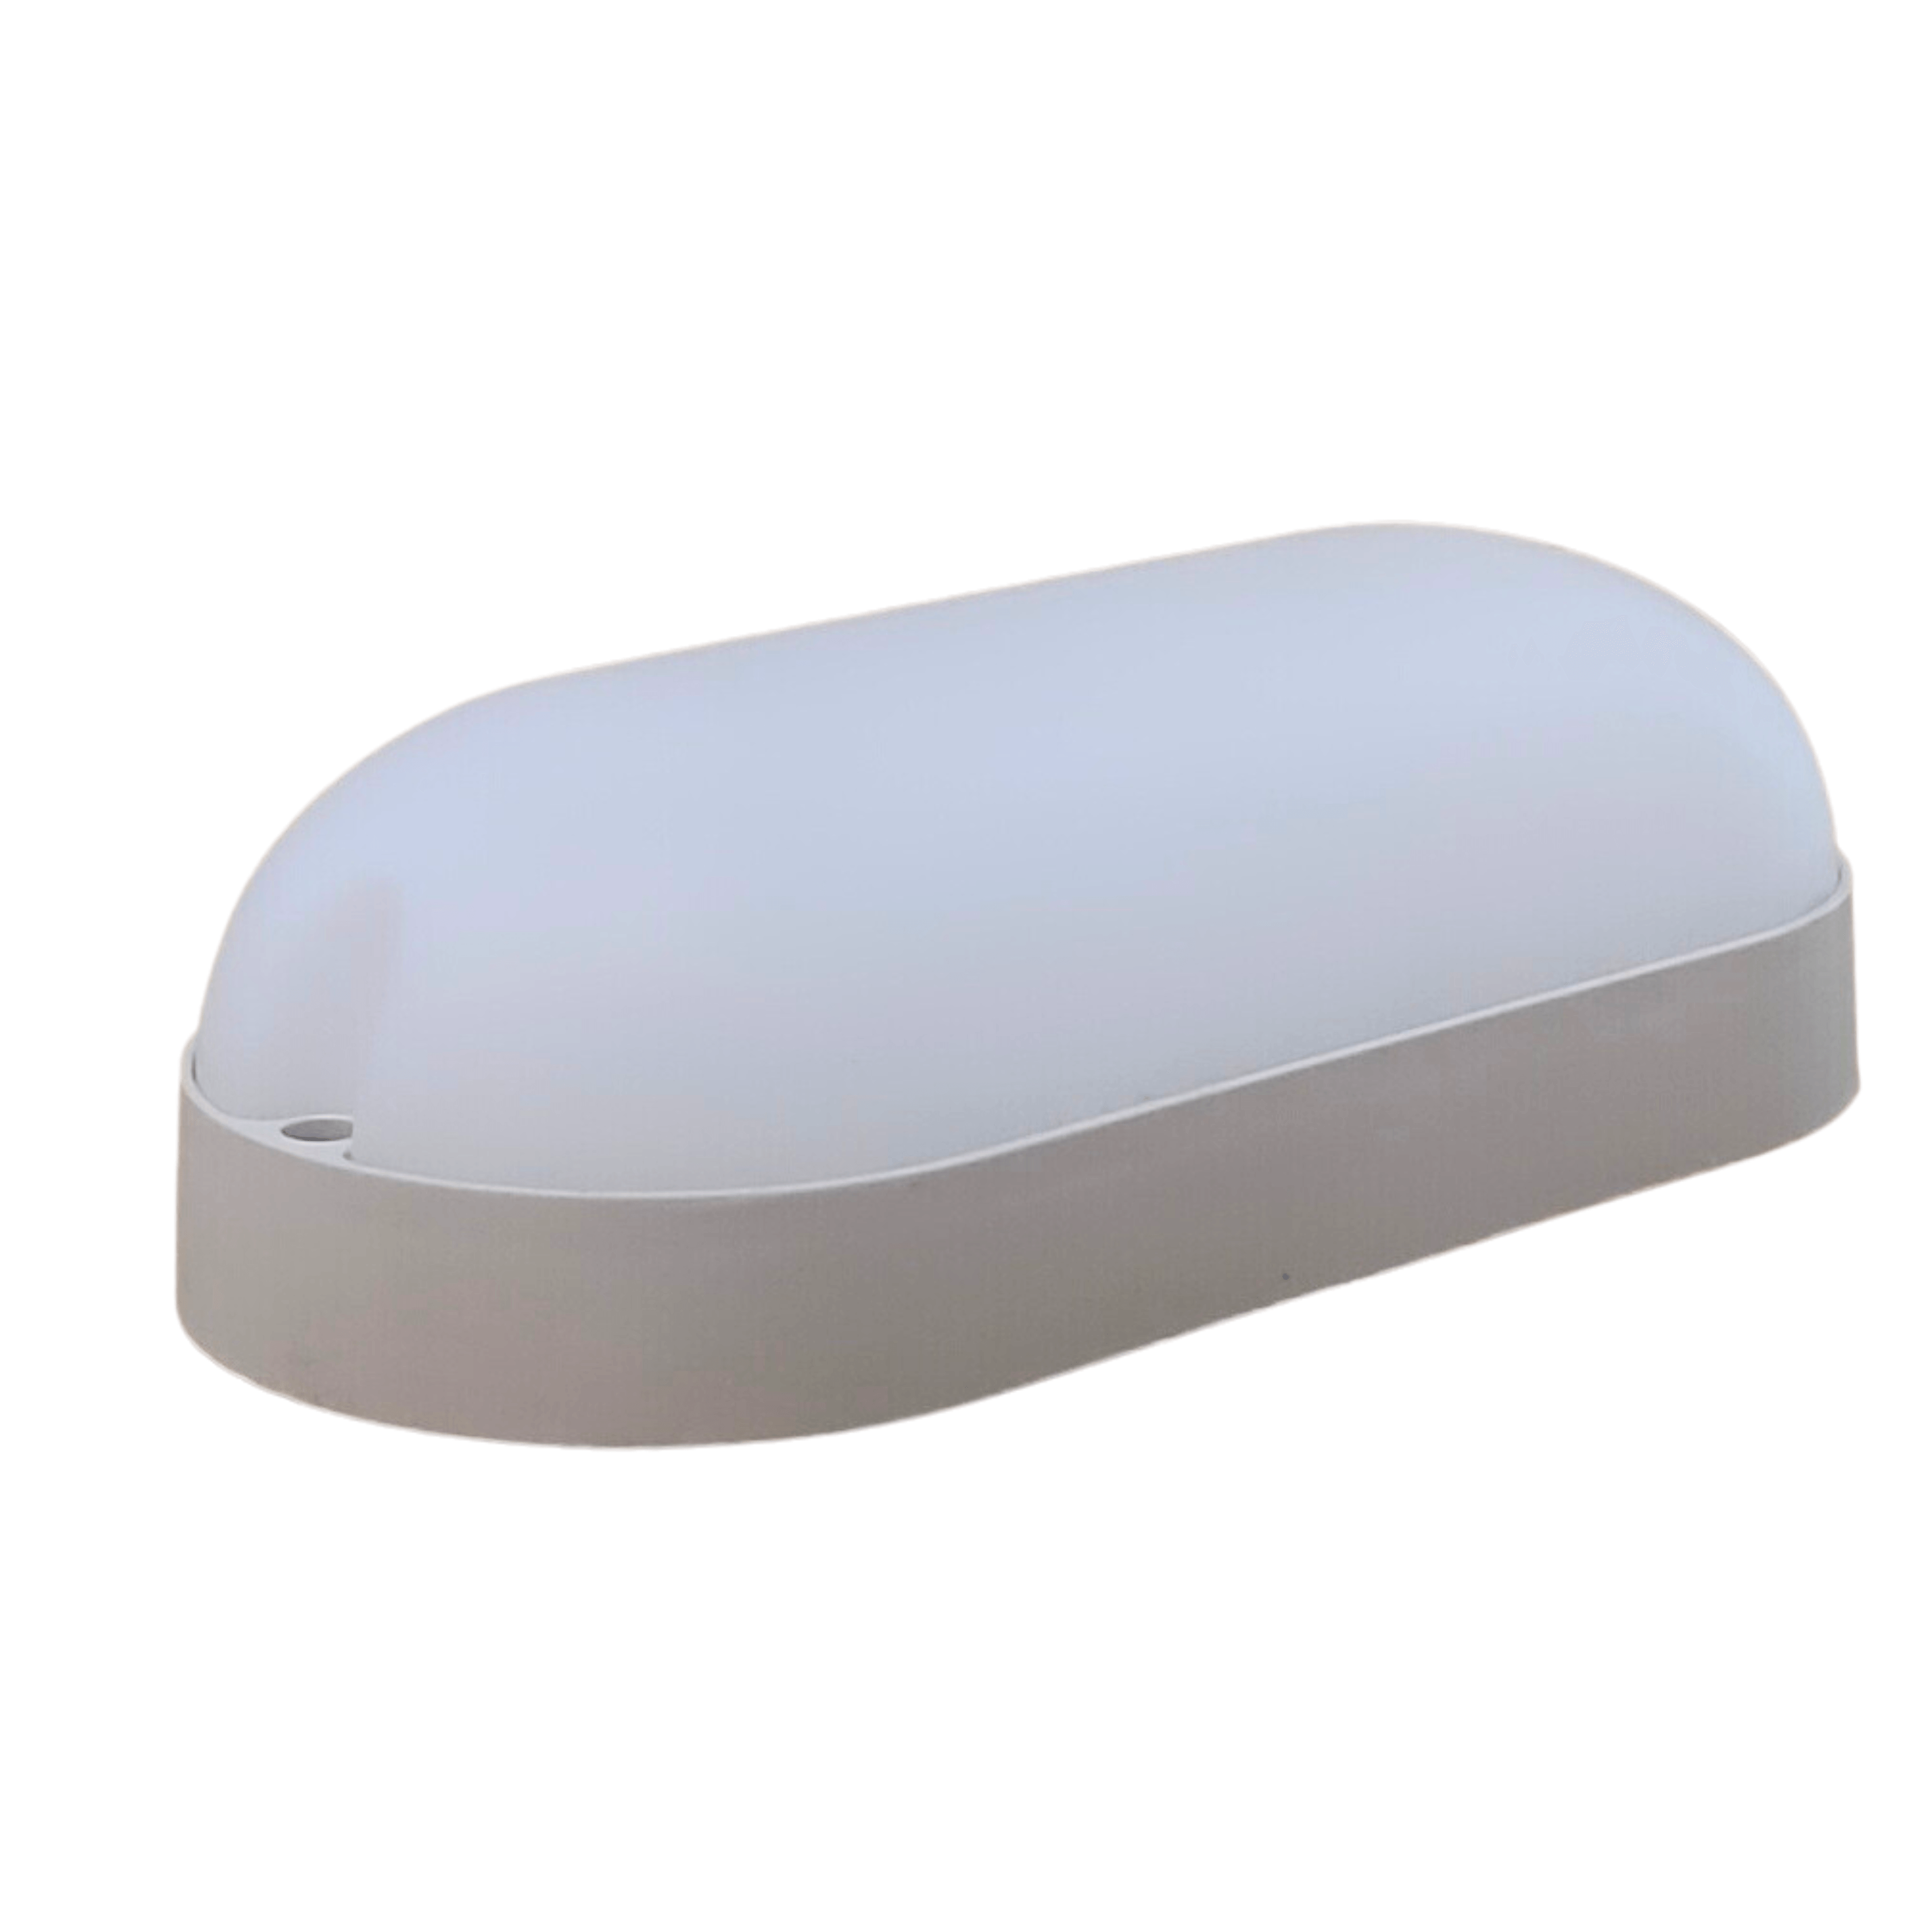 18 Watt LED Oval Shape Outdoor Bulkhead Waterproof Light for Outdoor Purposes